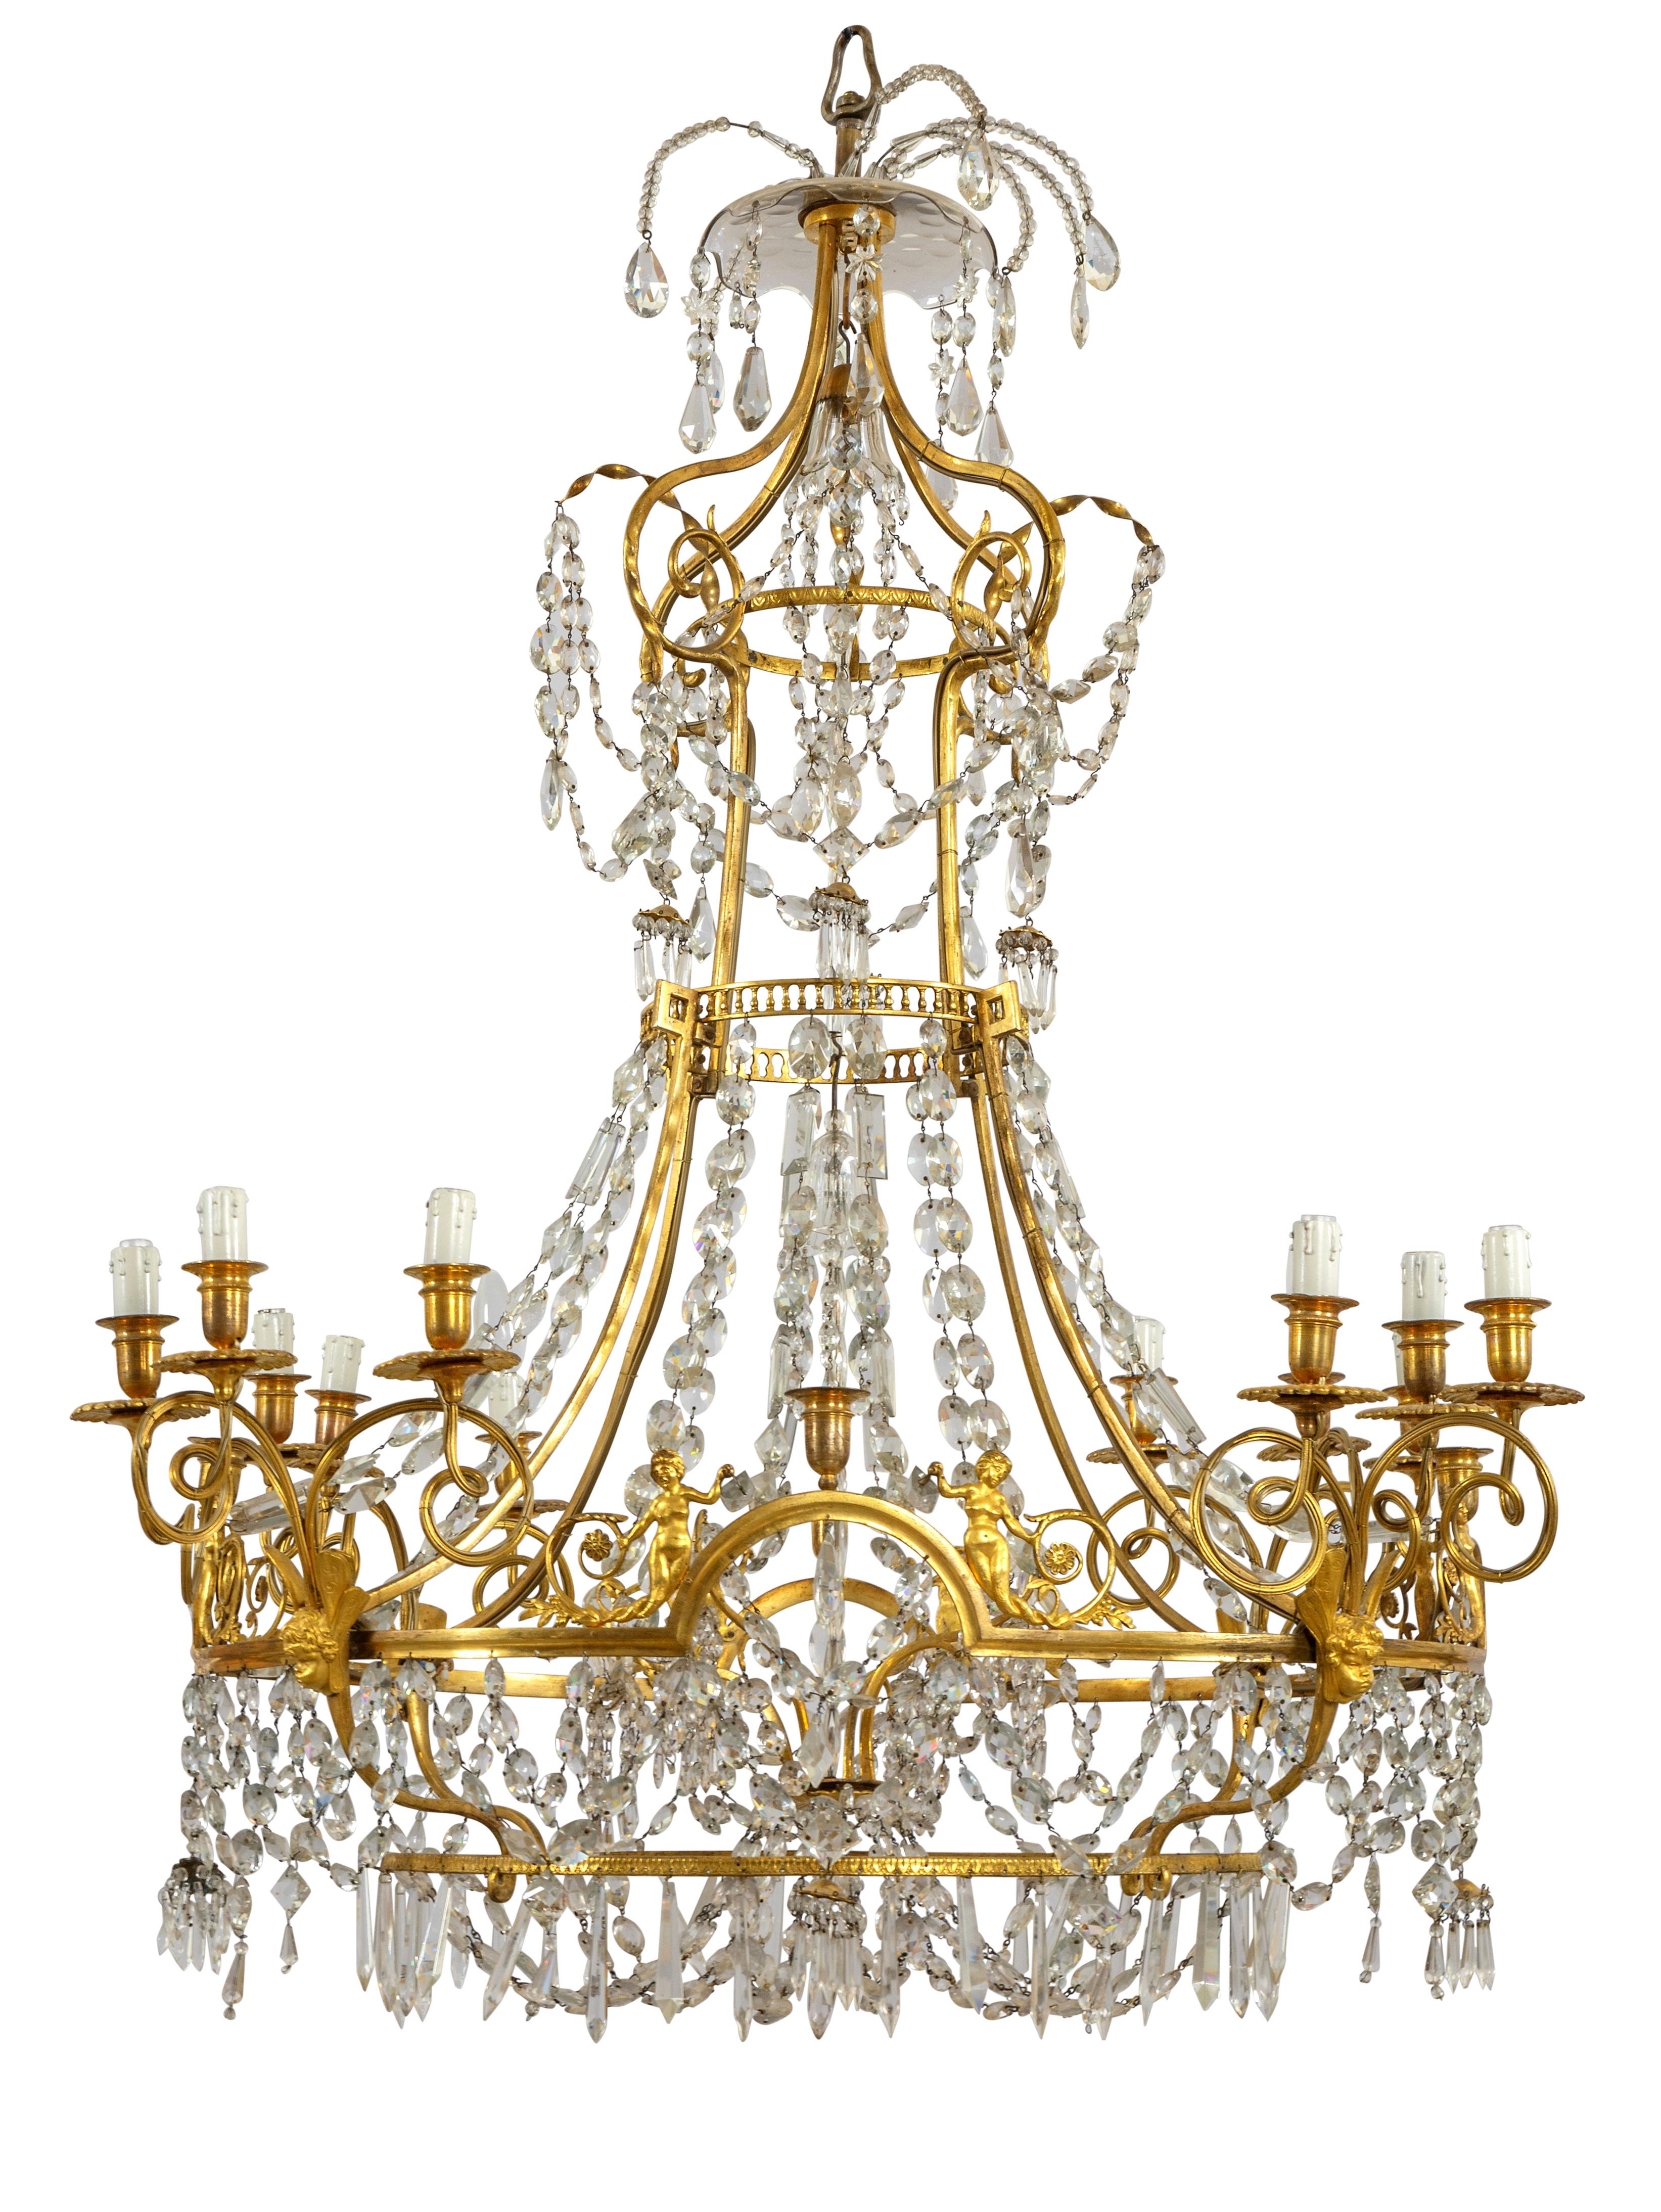 19. Jahrhundert, großer französischer Kronleuchter aus vergoldeter Bronze und Kristall mit zwölf Lichtern

Dieser elegante und raffinierte Kronleuchter wurde im frühen neunzehnten Jahrhundert in Frankreich hergestellt.
Die Struktur besteht aus fein